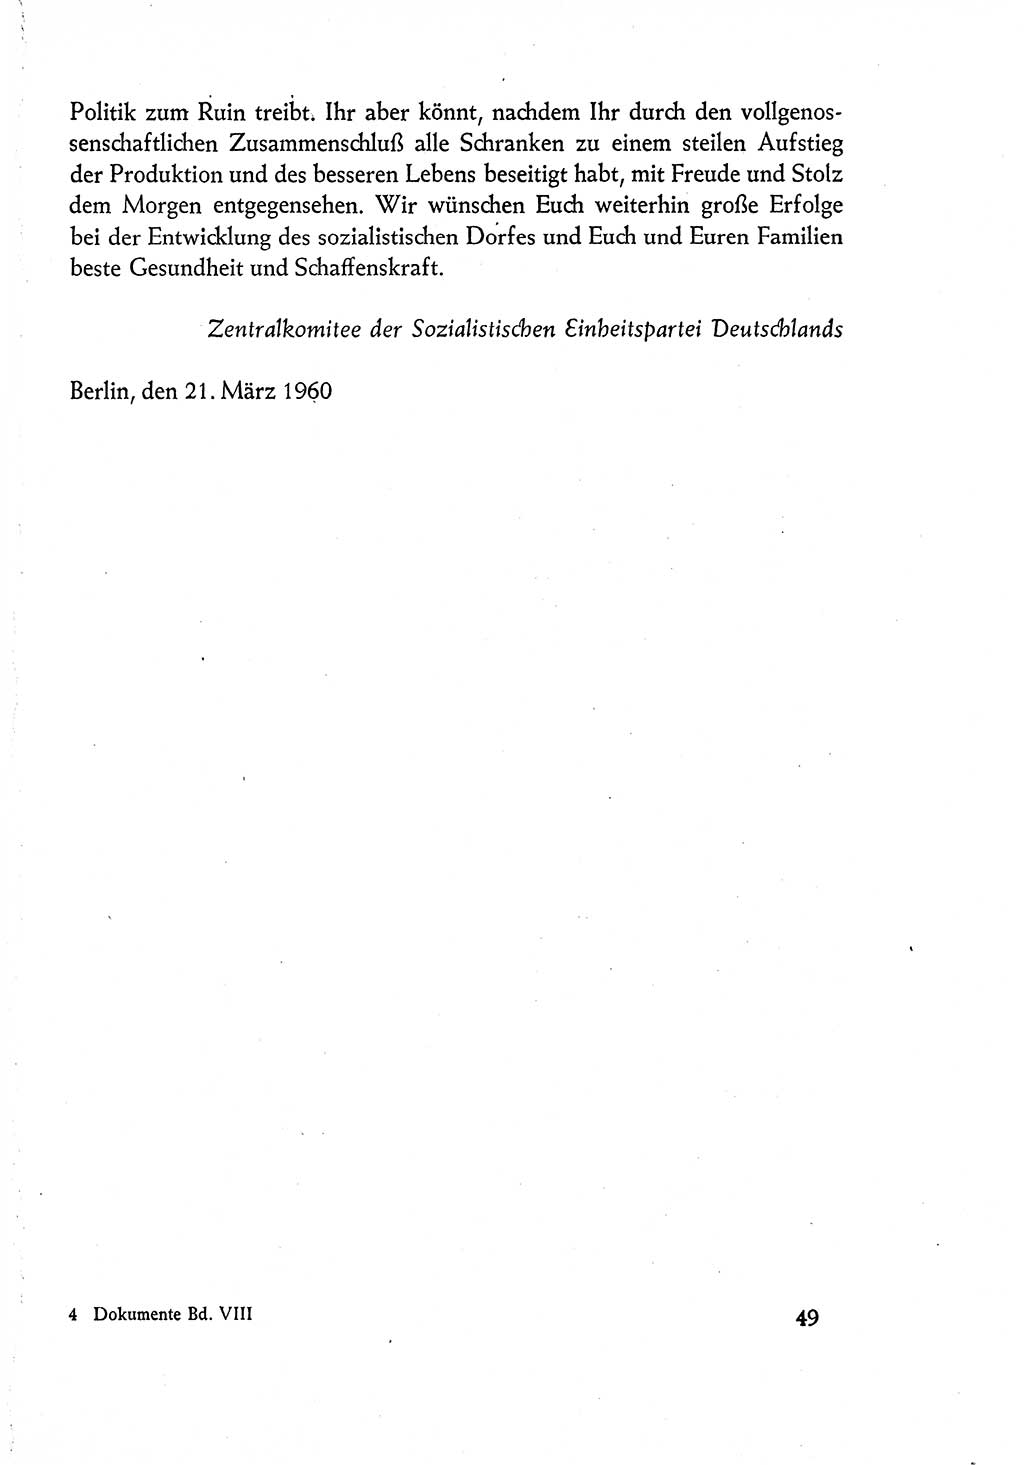 Dokumente der Sozialistischen Einheitspartei Deutschlands (SED) [Deutsche Demokratische Republik (DDR)] 1960-1961, Seite 49 (Dok. SED DDR 1960-1961, S. 49)